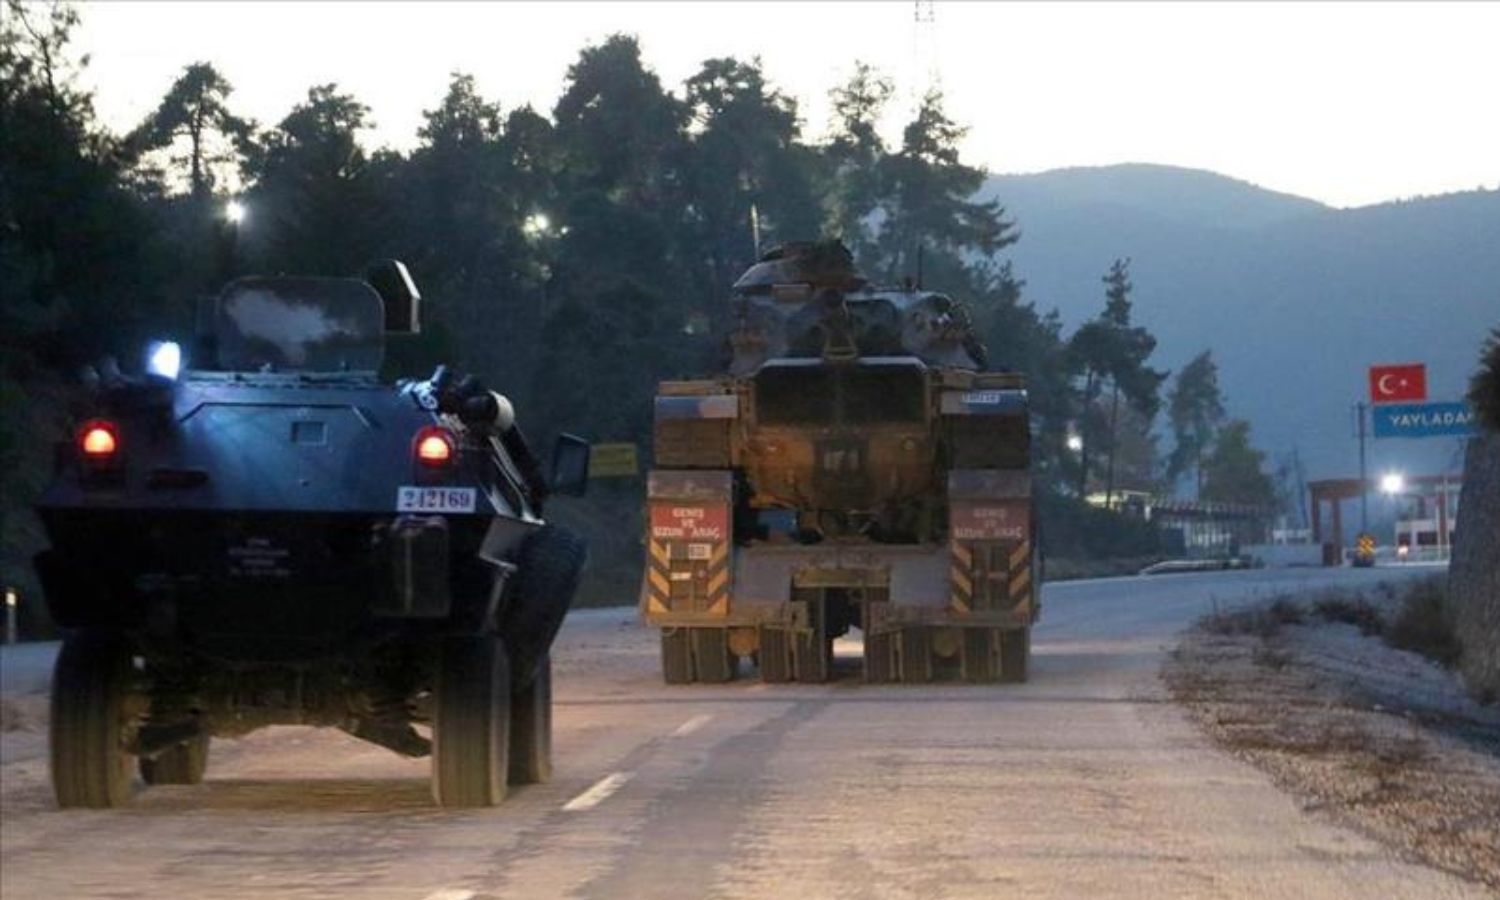 آليات عسكرية تركية متوجهة نحو معبر "كسب" (يايلاداغي) الحدودي بين تركيا وسوريا- 25 تشرين الثاني 2015 (الأناضول)